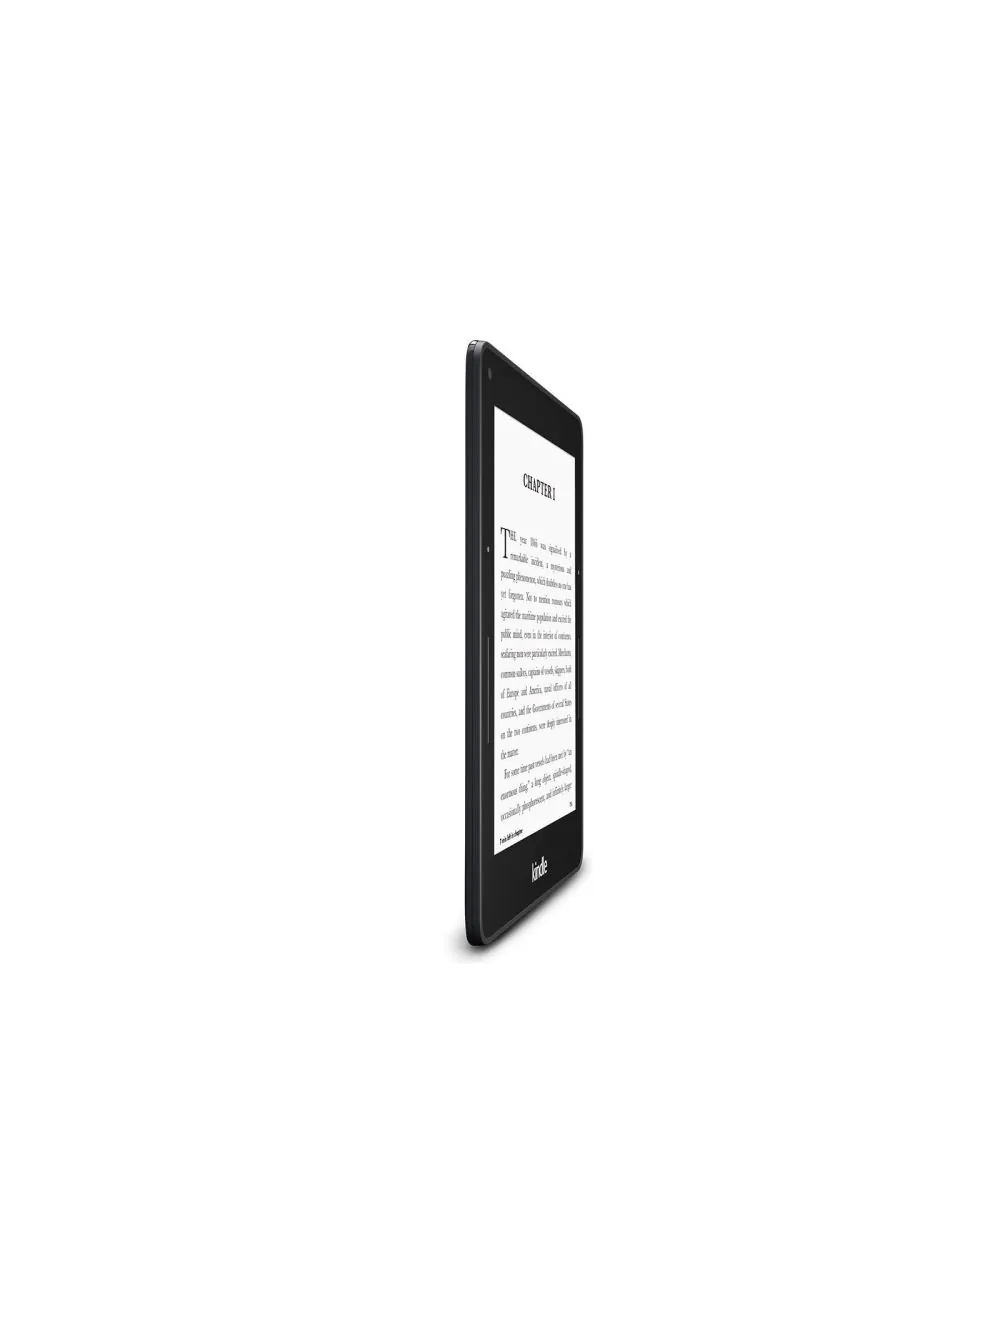 Kindle Voyage: Bạn đang tìm kiếm một thiết bị đọc sách thông minh, nhỏ gọn và chất lượng cao? Kindle Voyage là lựa chọn tuyệt vời cho bạn! Với màn hình hiển thị siêu sắc nét và thiết kế sang trọng, đây là giải pháp hoàn hảo để giúp bạn thư giãn đọc sách tuyệt vời.